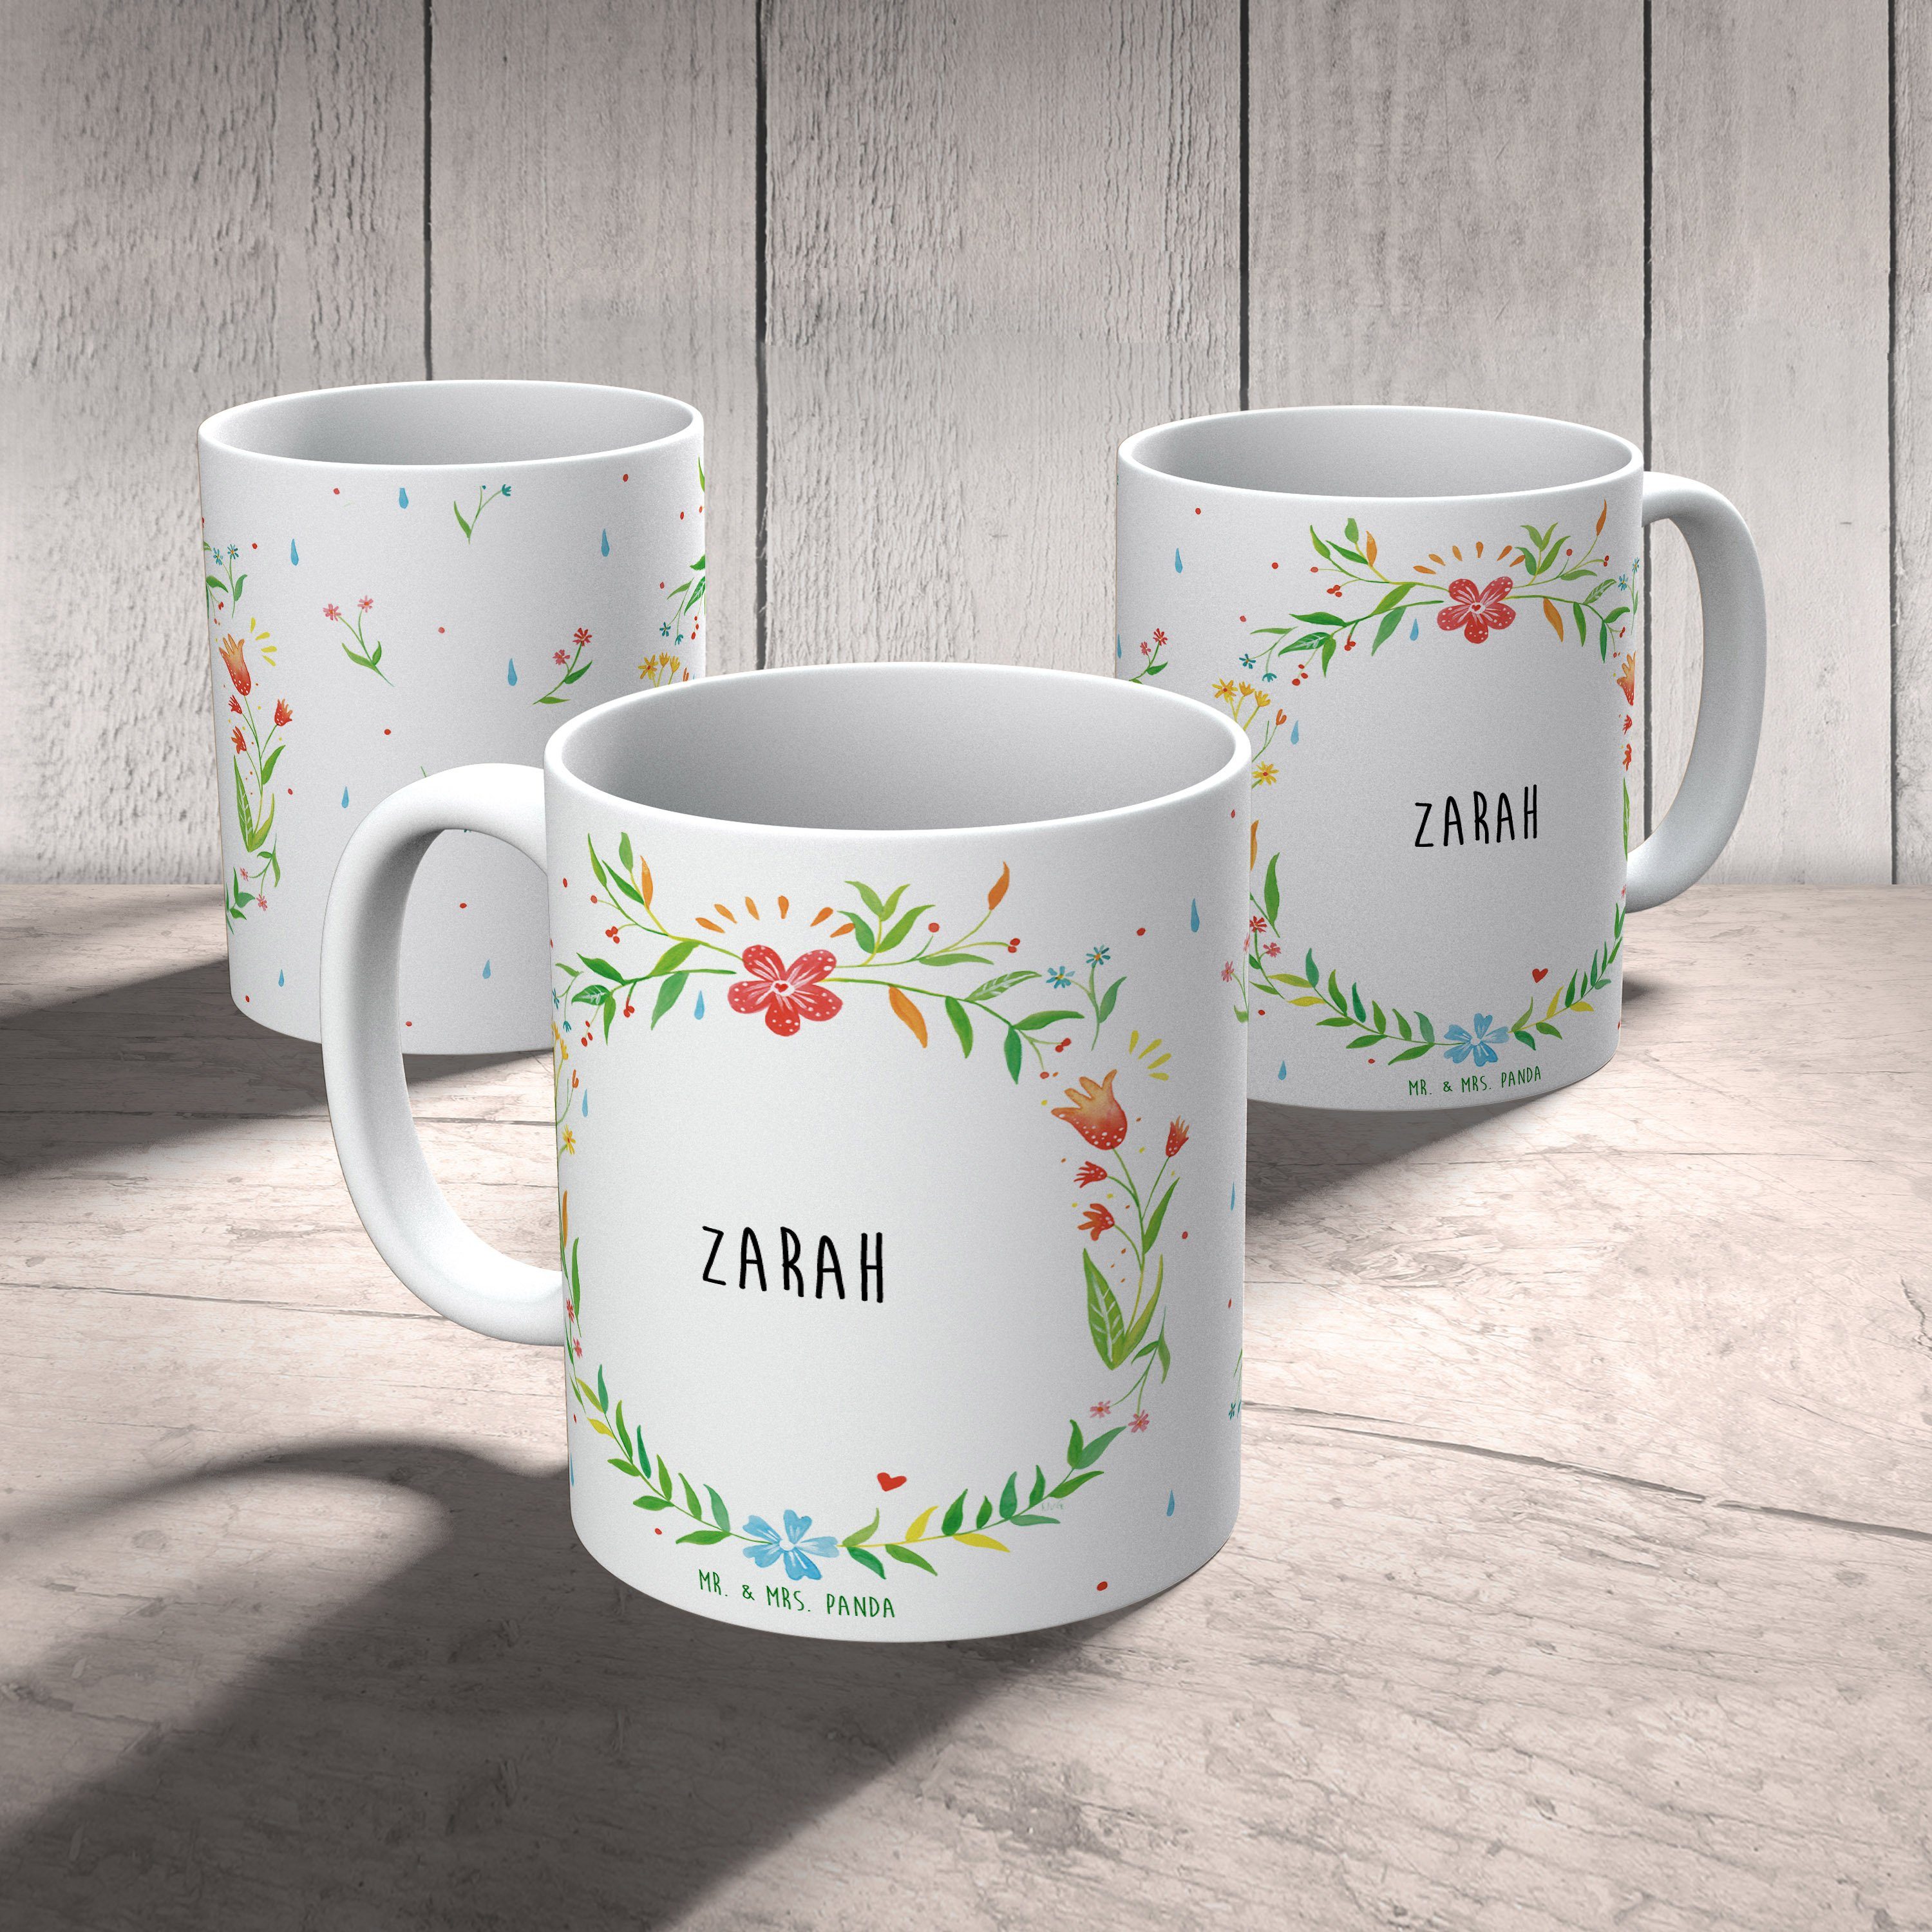 Mr. & Mrs. Panda - Tasse, Geschenk, Becher, Zarah Ker, Tasse Tasse Keramik Teetasse, Motive, Geschenk